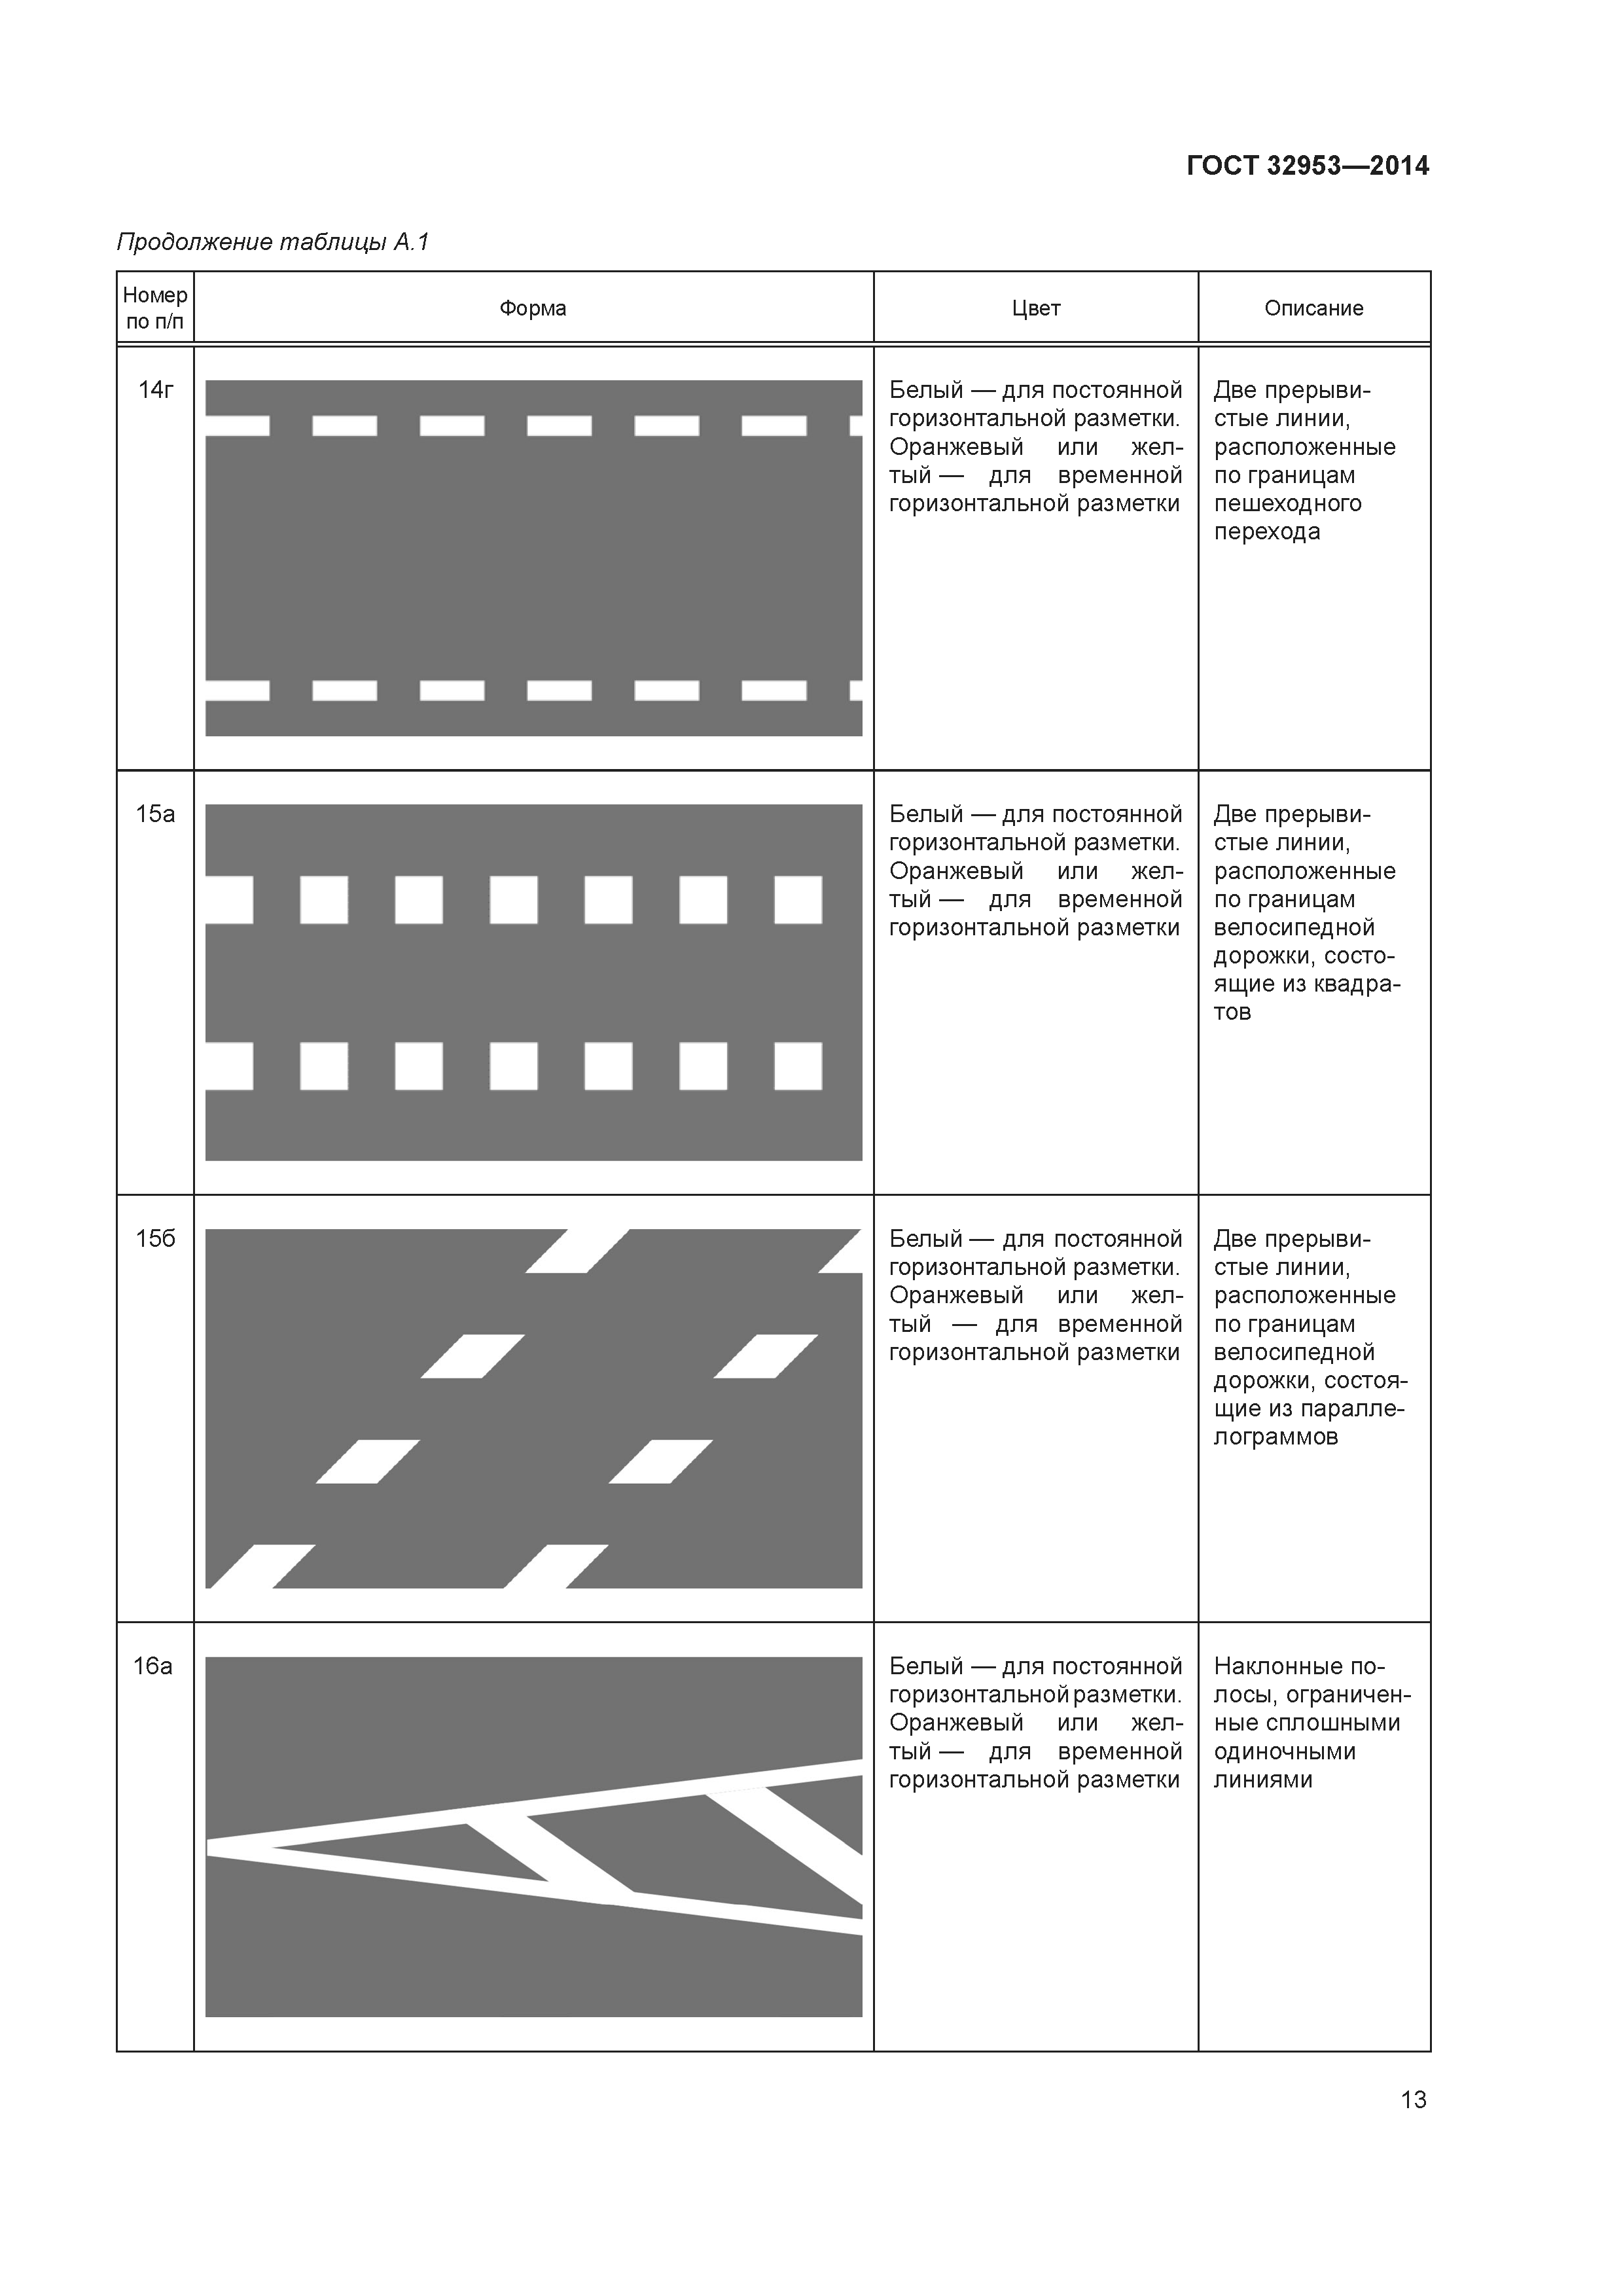 Как нарисовать дорожную разметку в автокаде